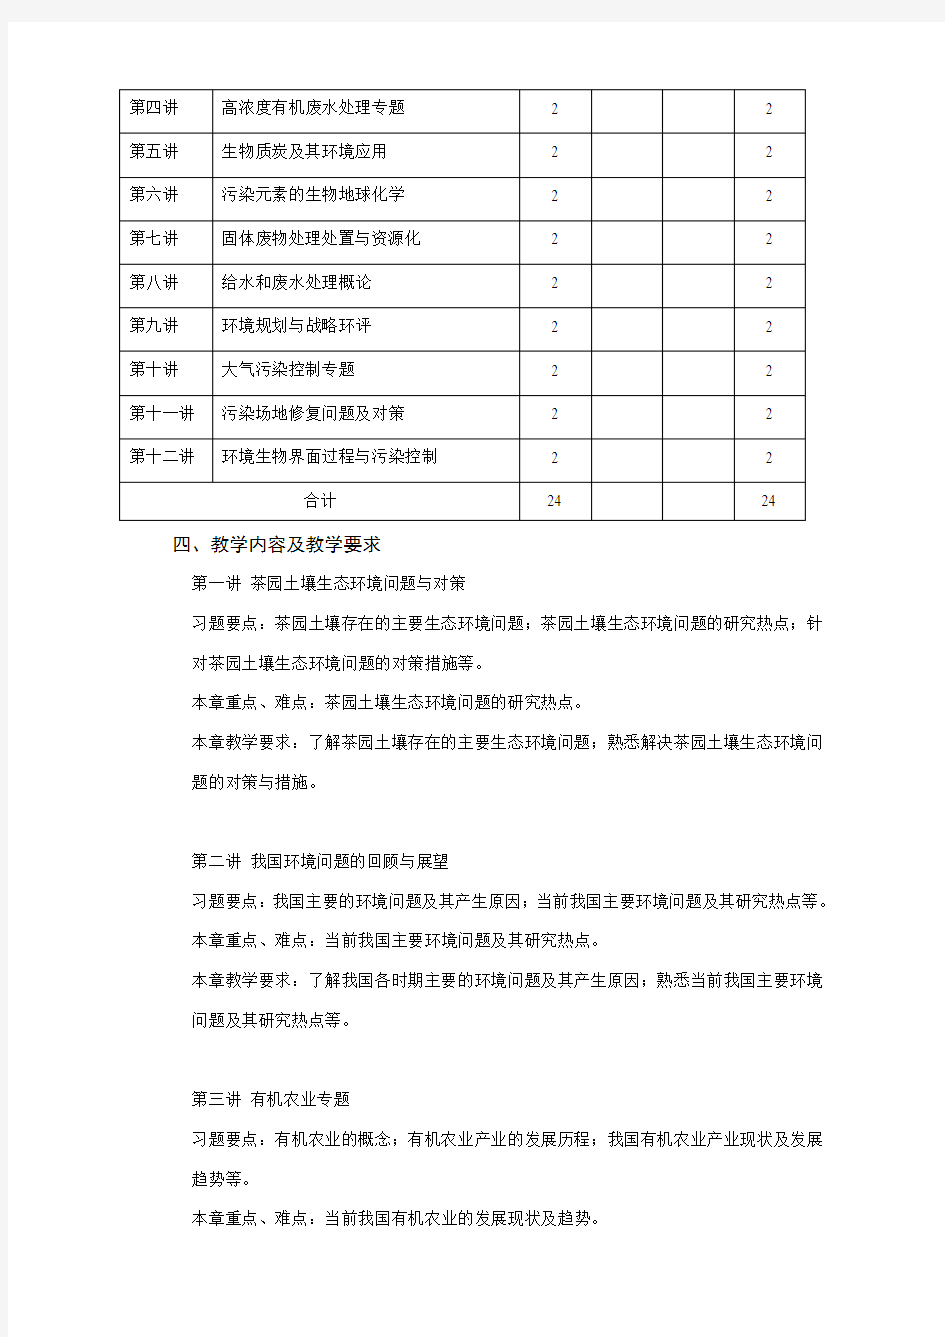 南京农业大学课程教学大纲格式与要求